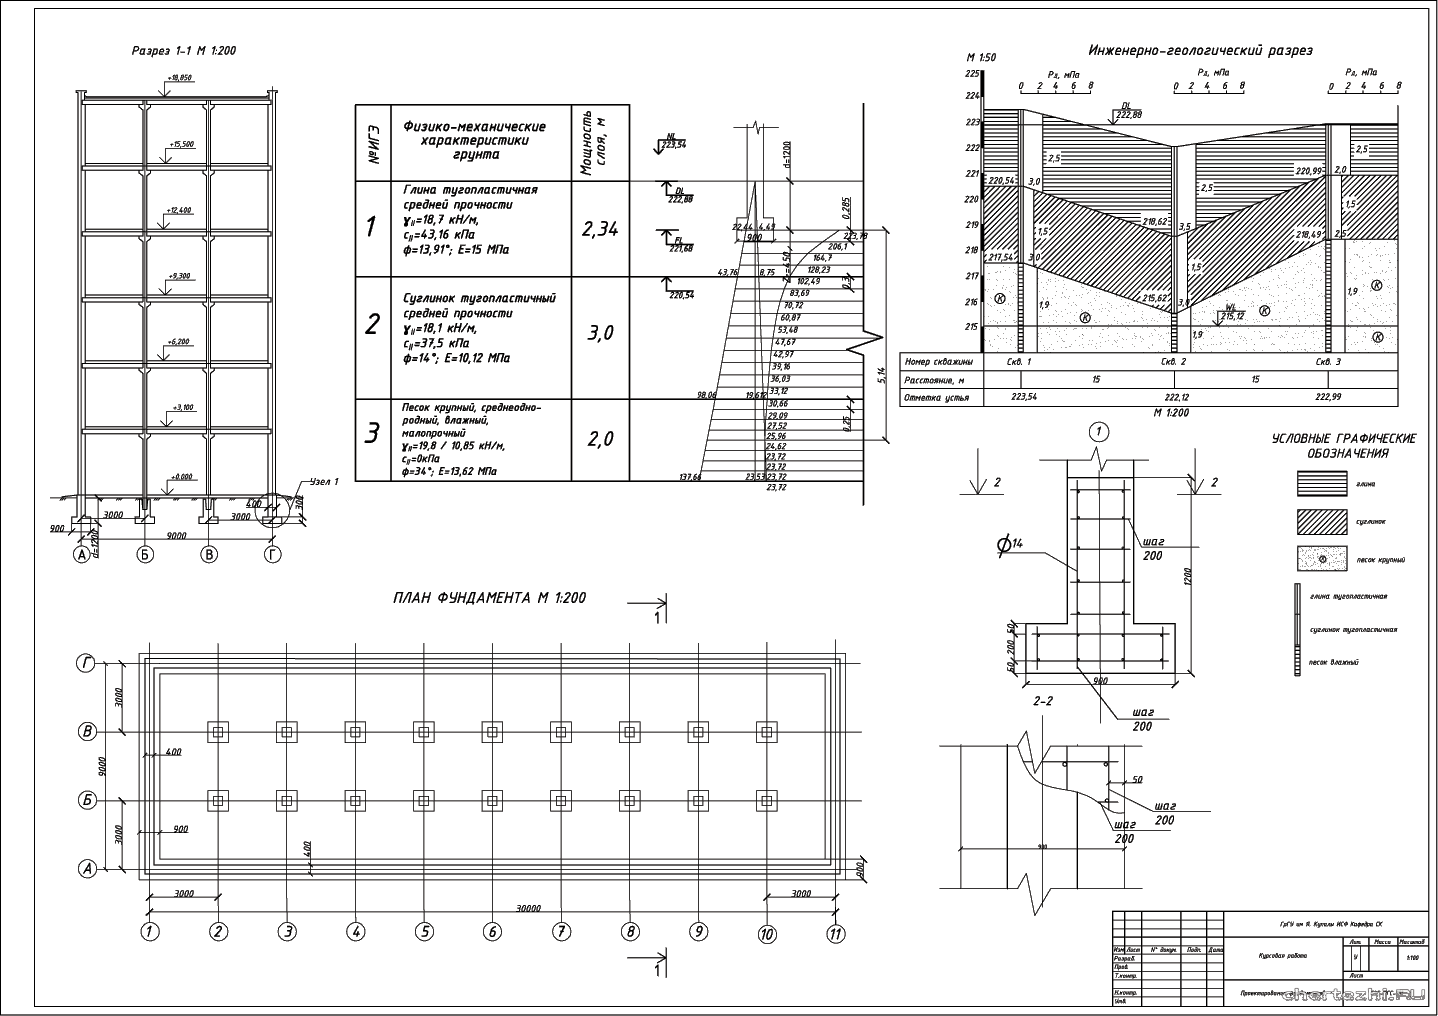 Курсовой проект - Проектирование фундаментов 6-ти этажного жилого здания в г. Полоцк